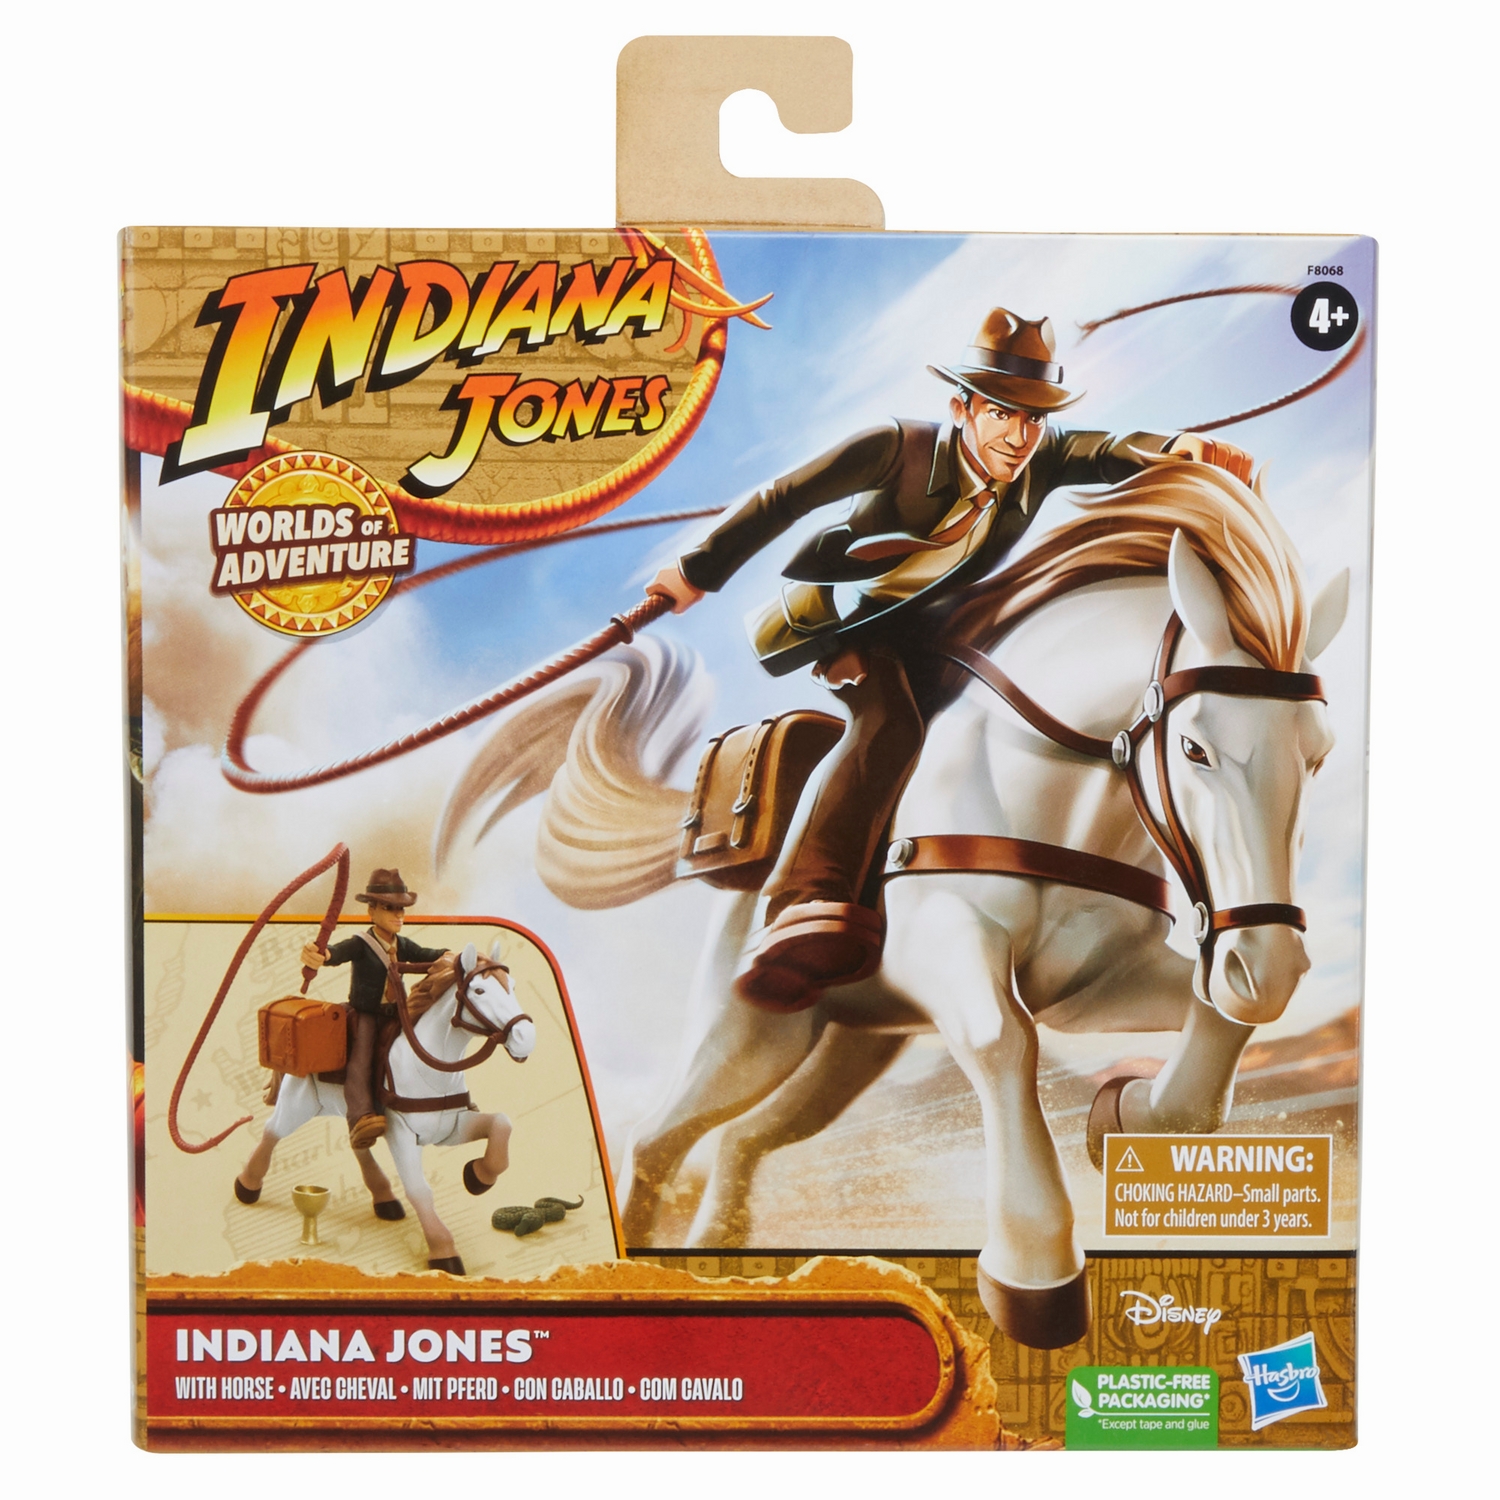 INDIANA JONES WORLDS OF ADVENTURE INDIANA JONES WITH HORSE - Package 1.jpg